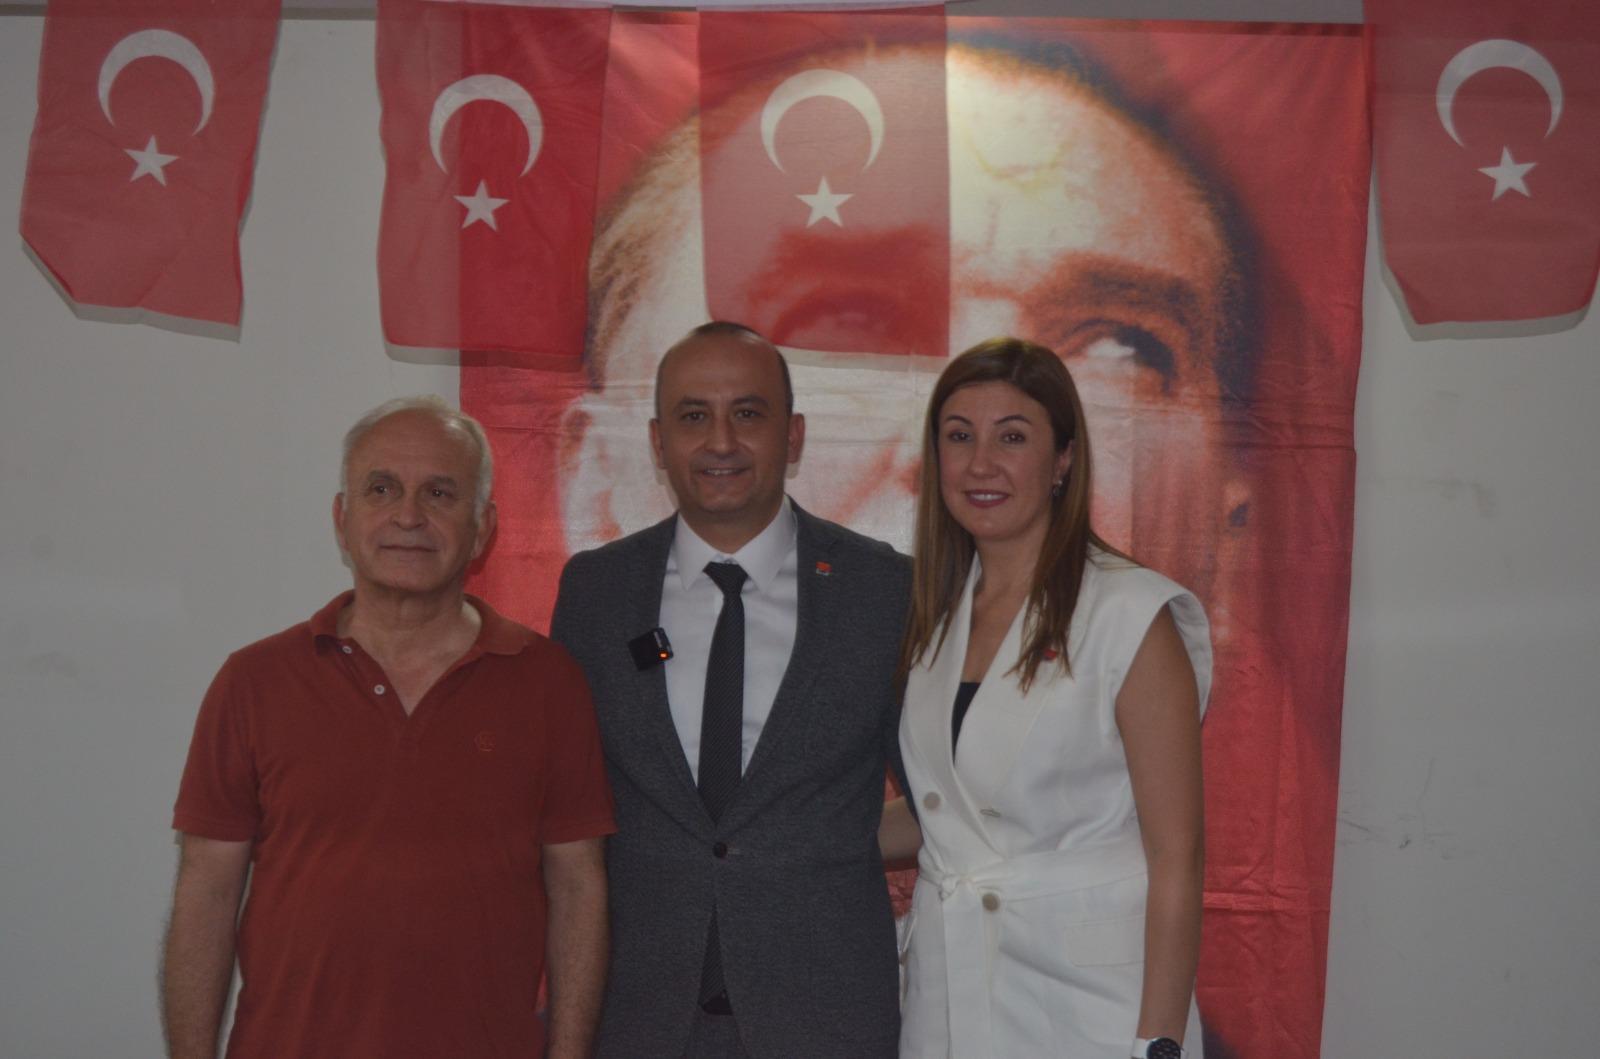 Avukat Coşkun, CHP Pamukkale İlçe Başkan adaylığını açıkladı!